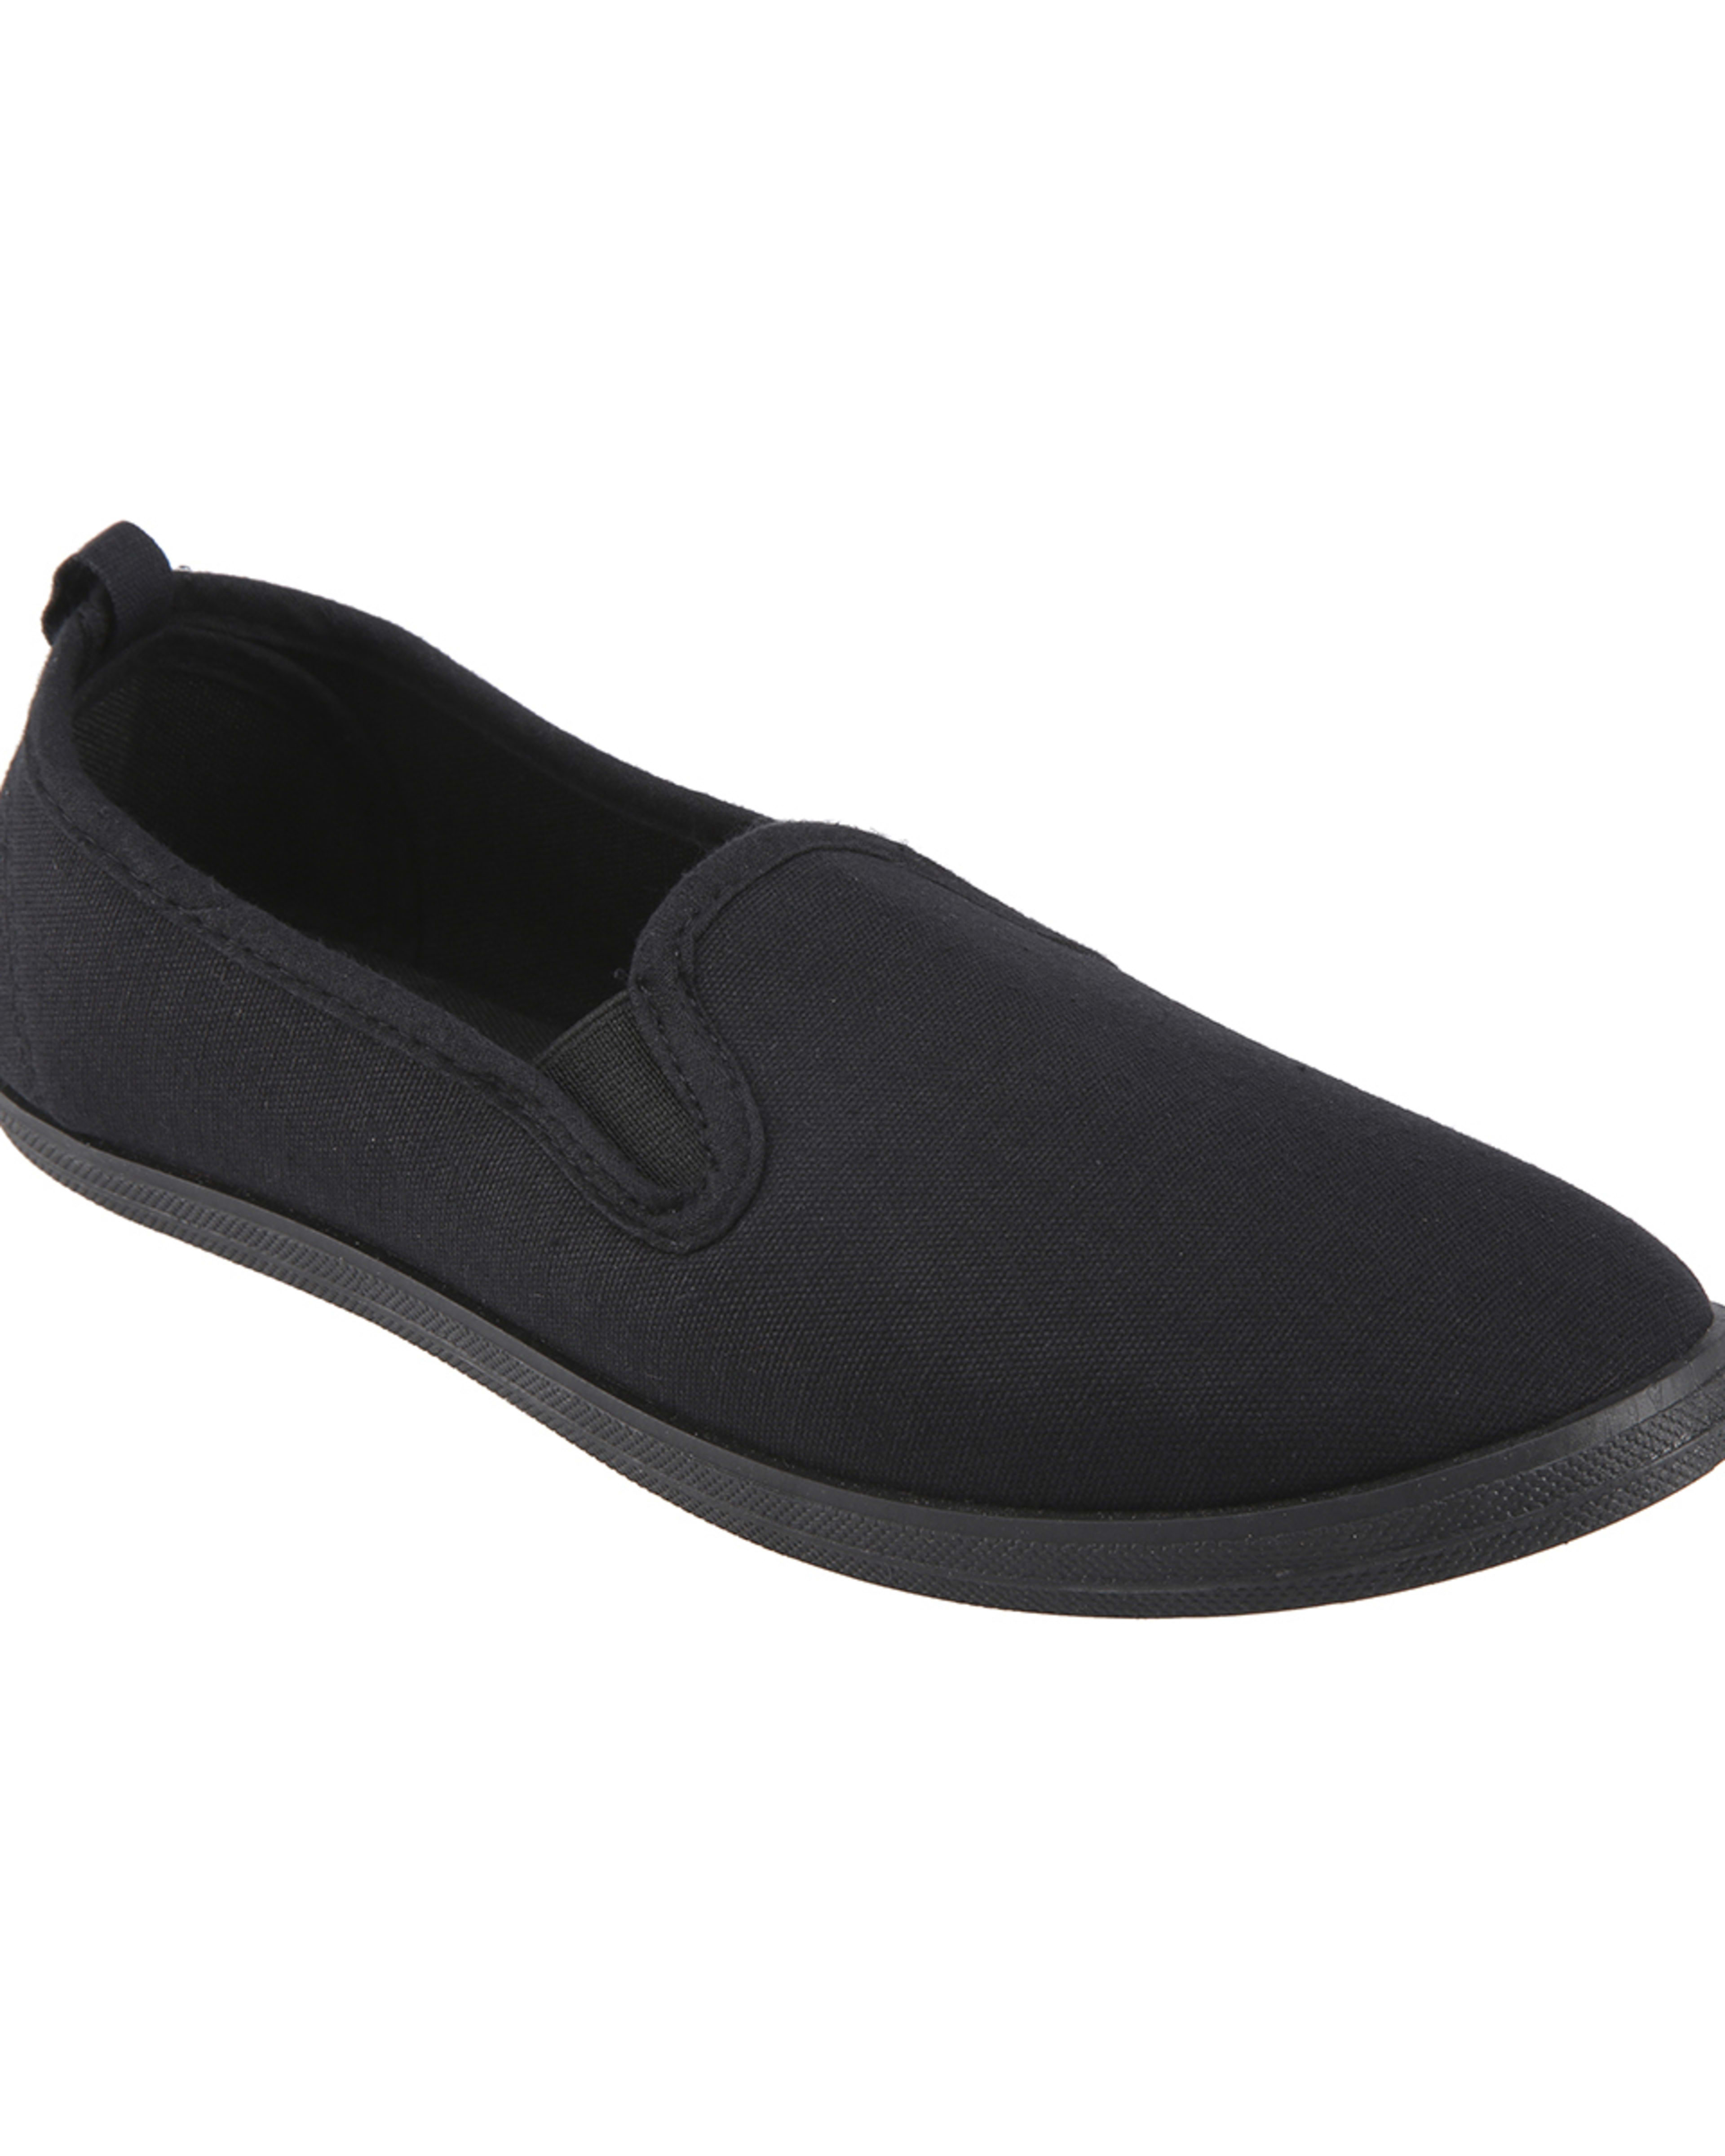 Senior Slip On Shoes - Kmart